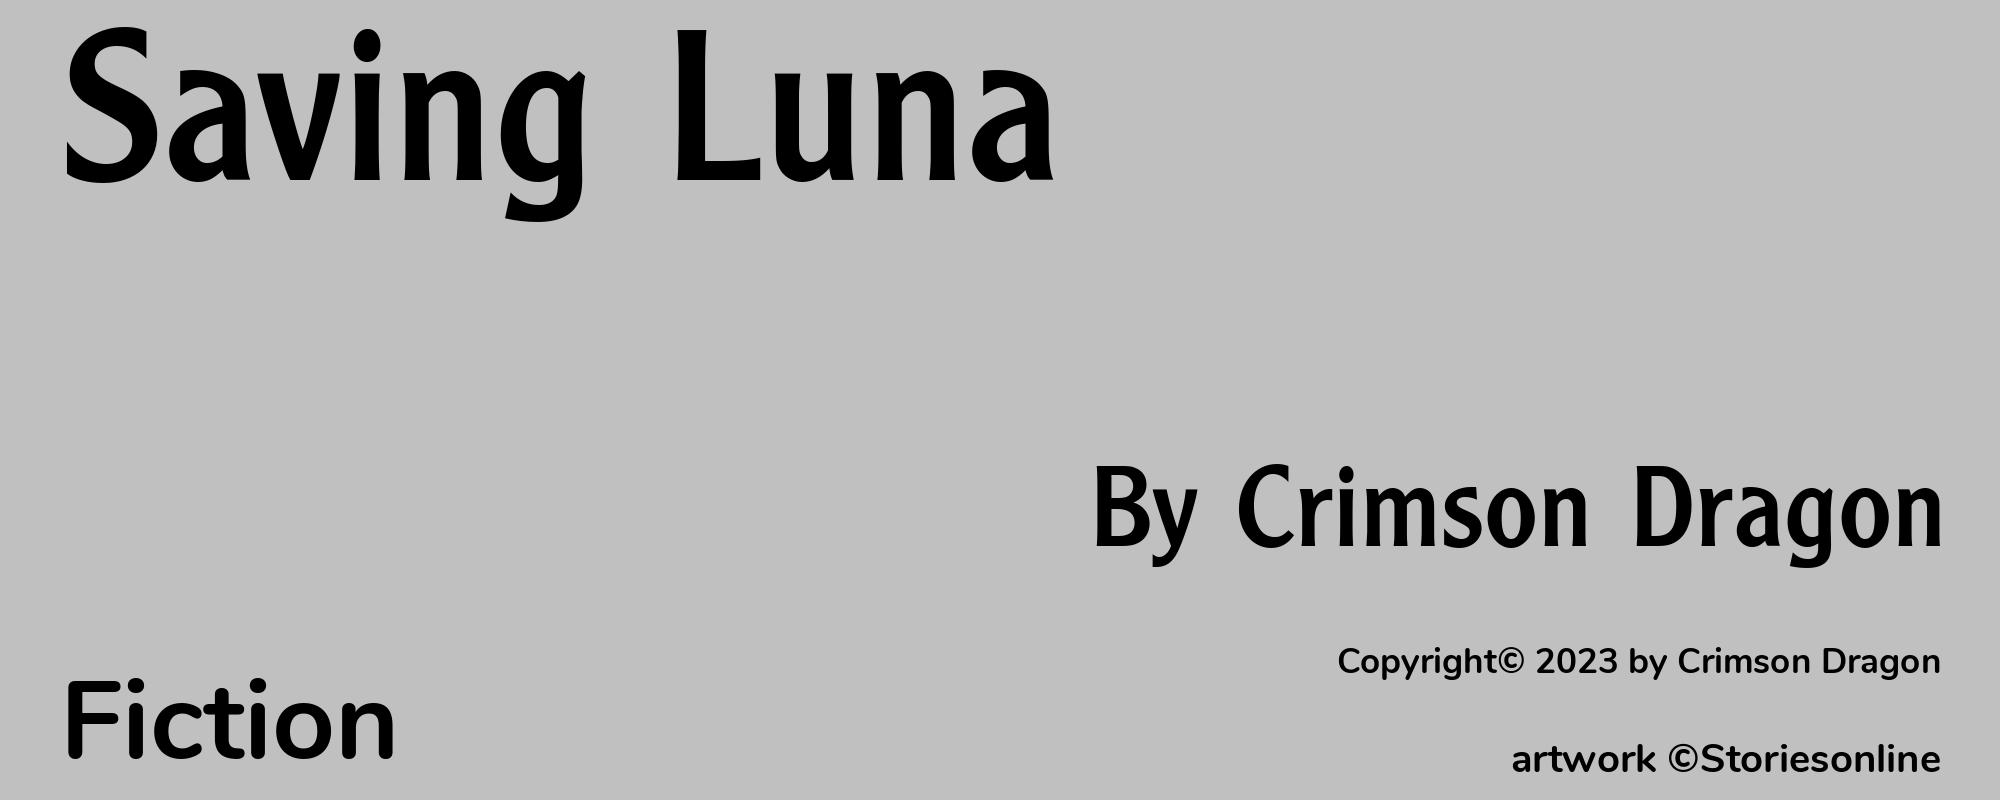 Saving Luna - Cover